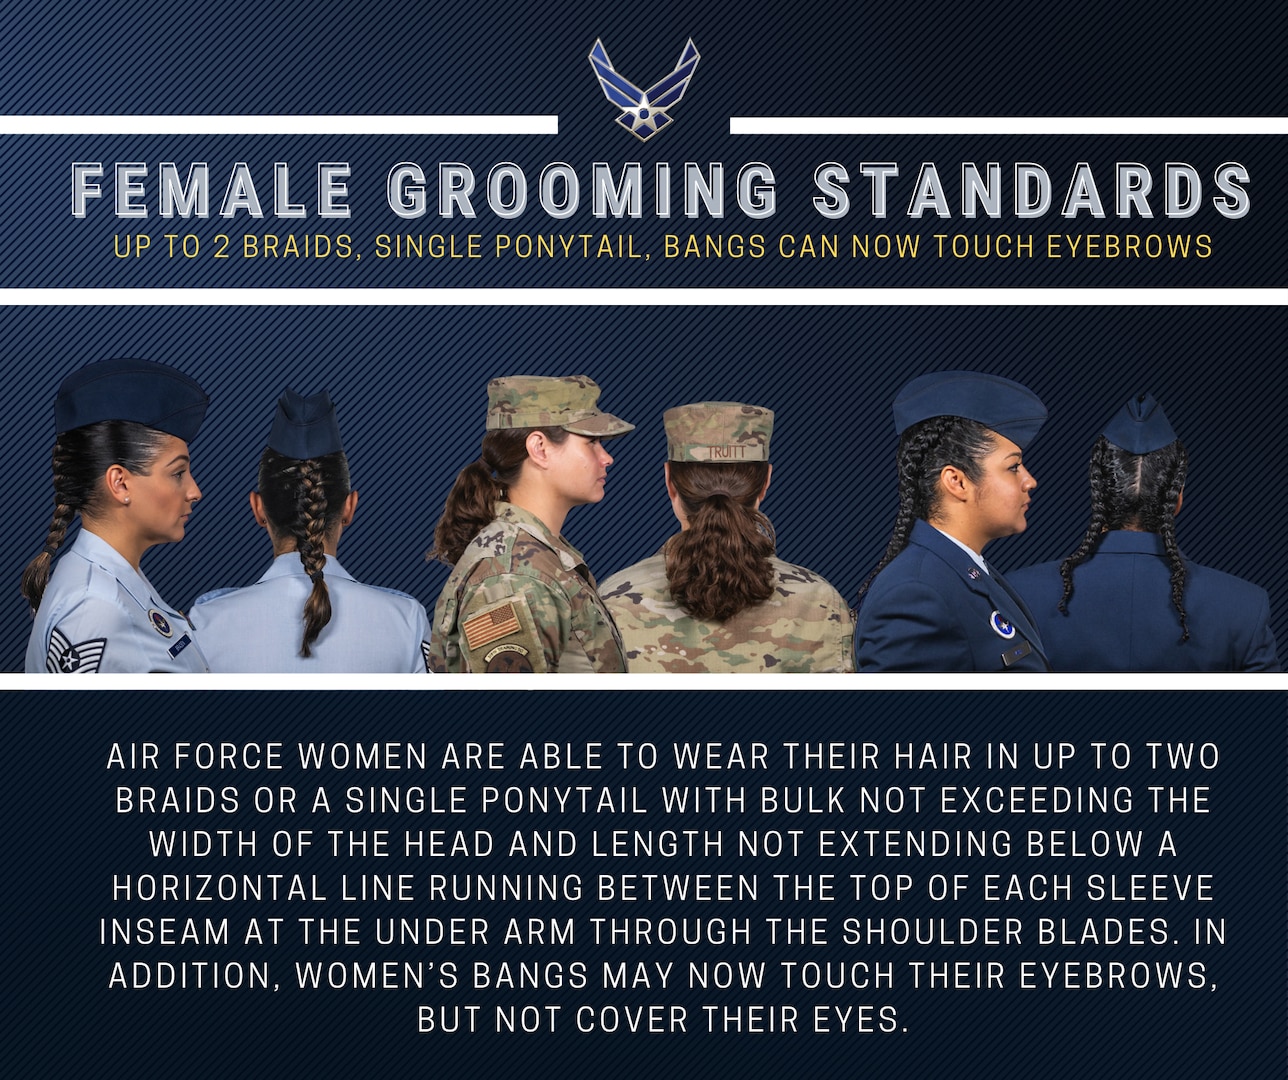 Air Force Female Grooming Standards